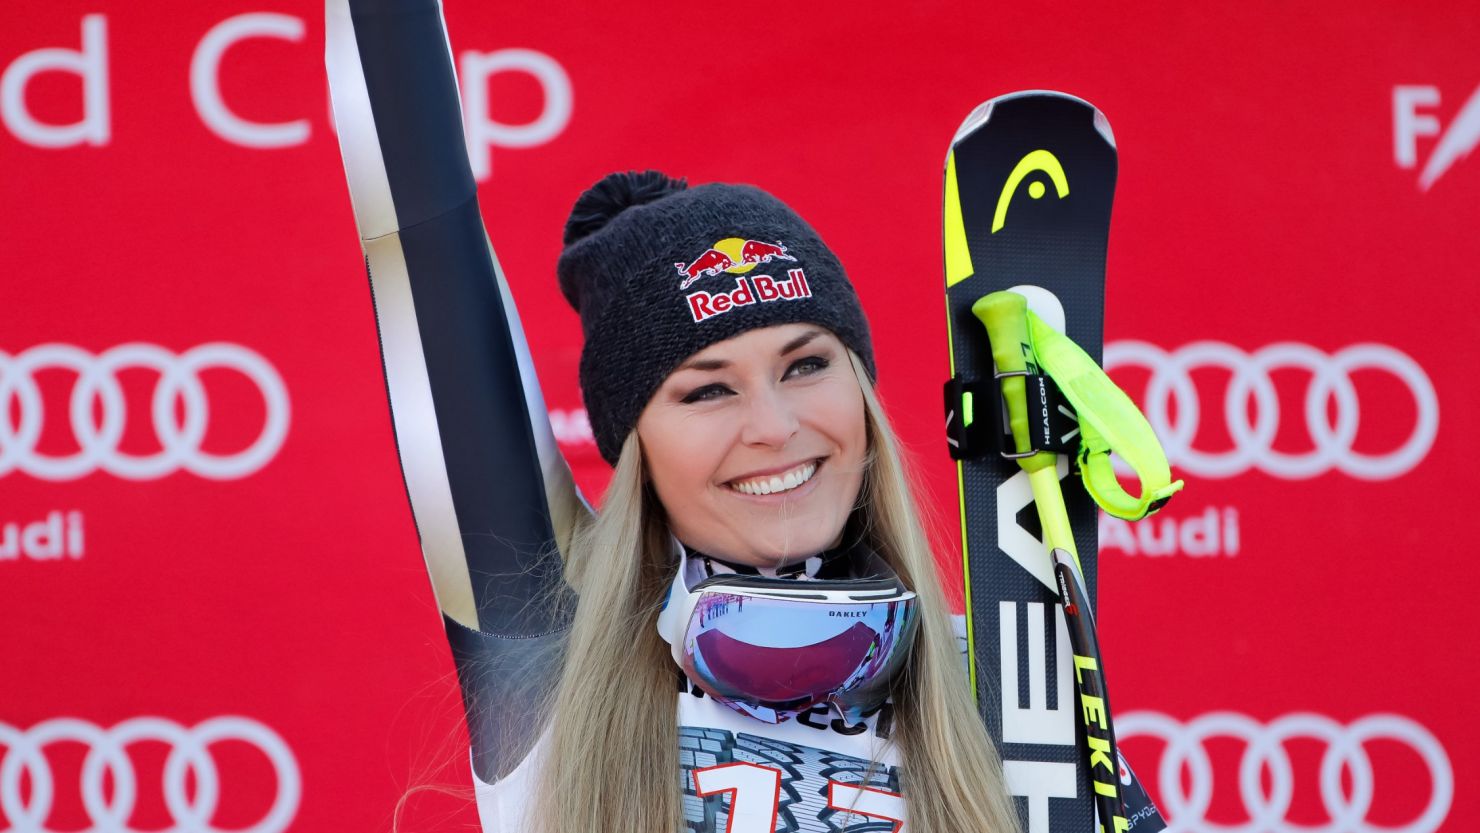 Lindsey Vonn celebrates on the podium after winning the FIS Alpine Ski World Cup Downhill in Garmisch-Partenkirchen.